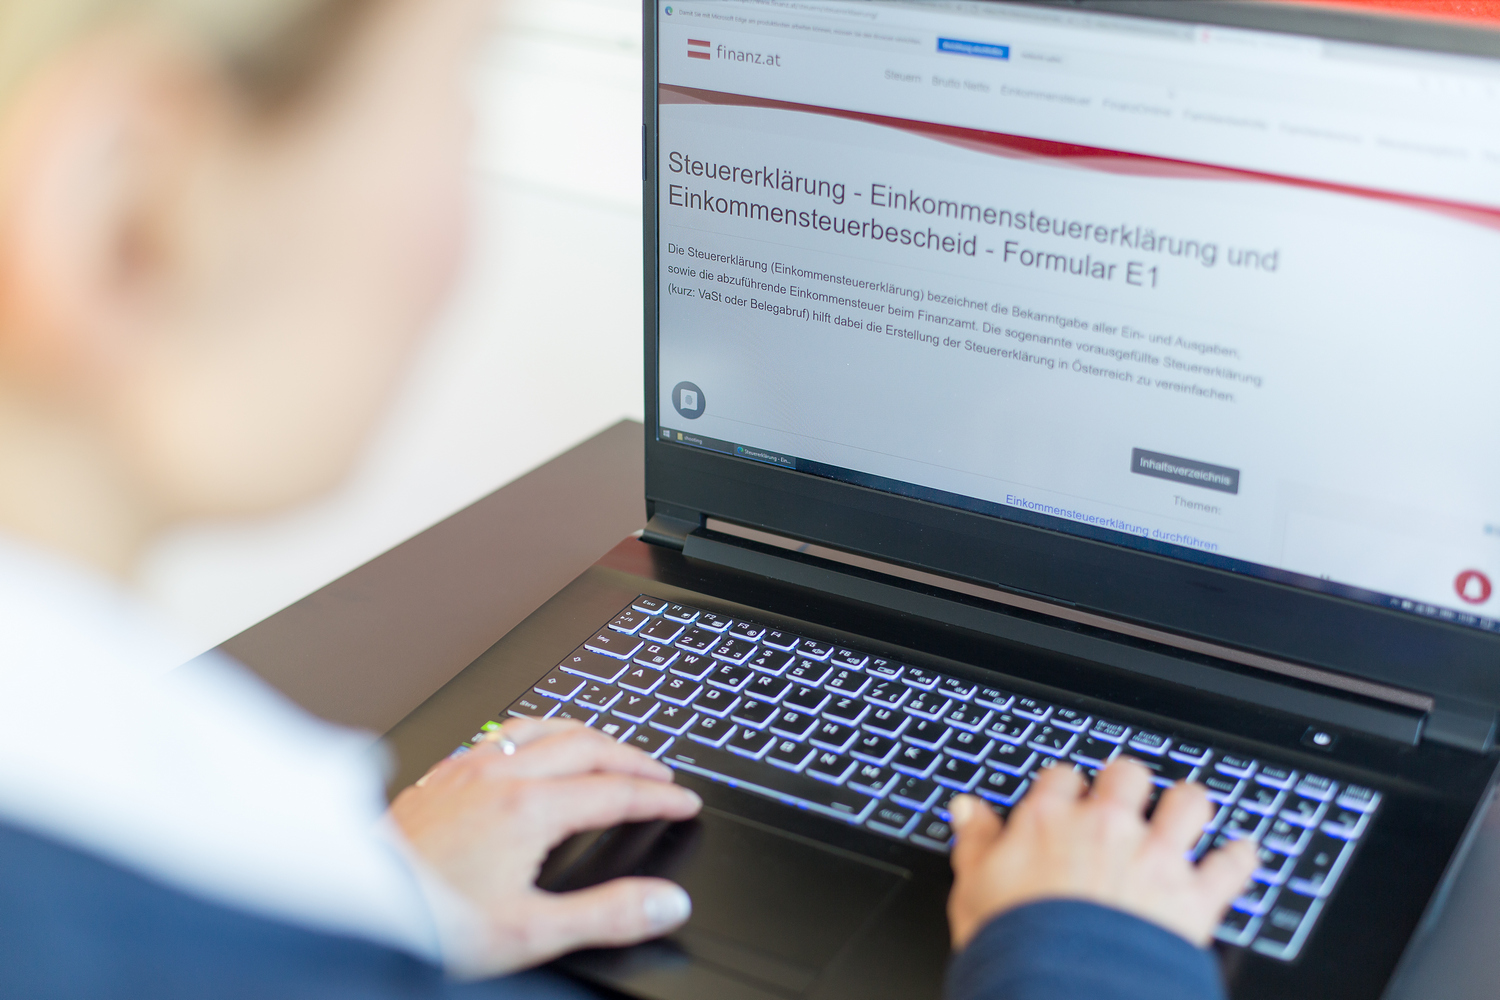 Eine Frau sitzt für einem Laptop und schaut sich im Internet eine Website über Steuererklärung an.